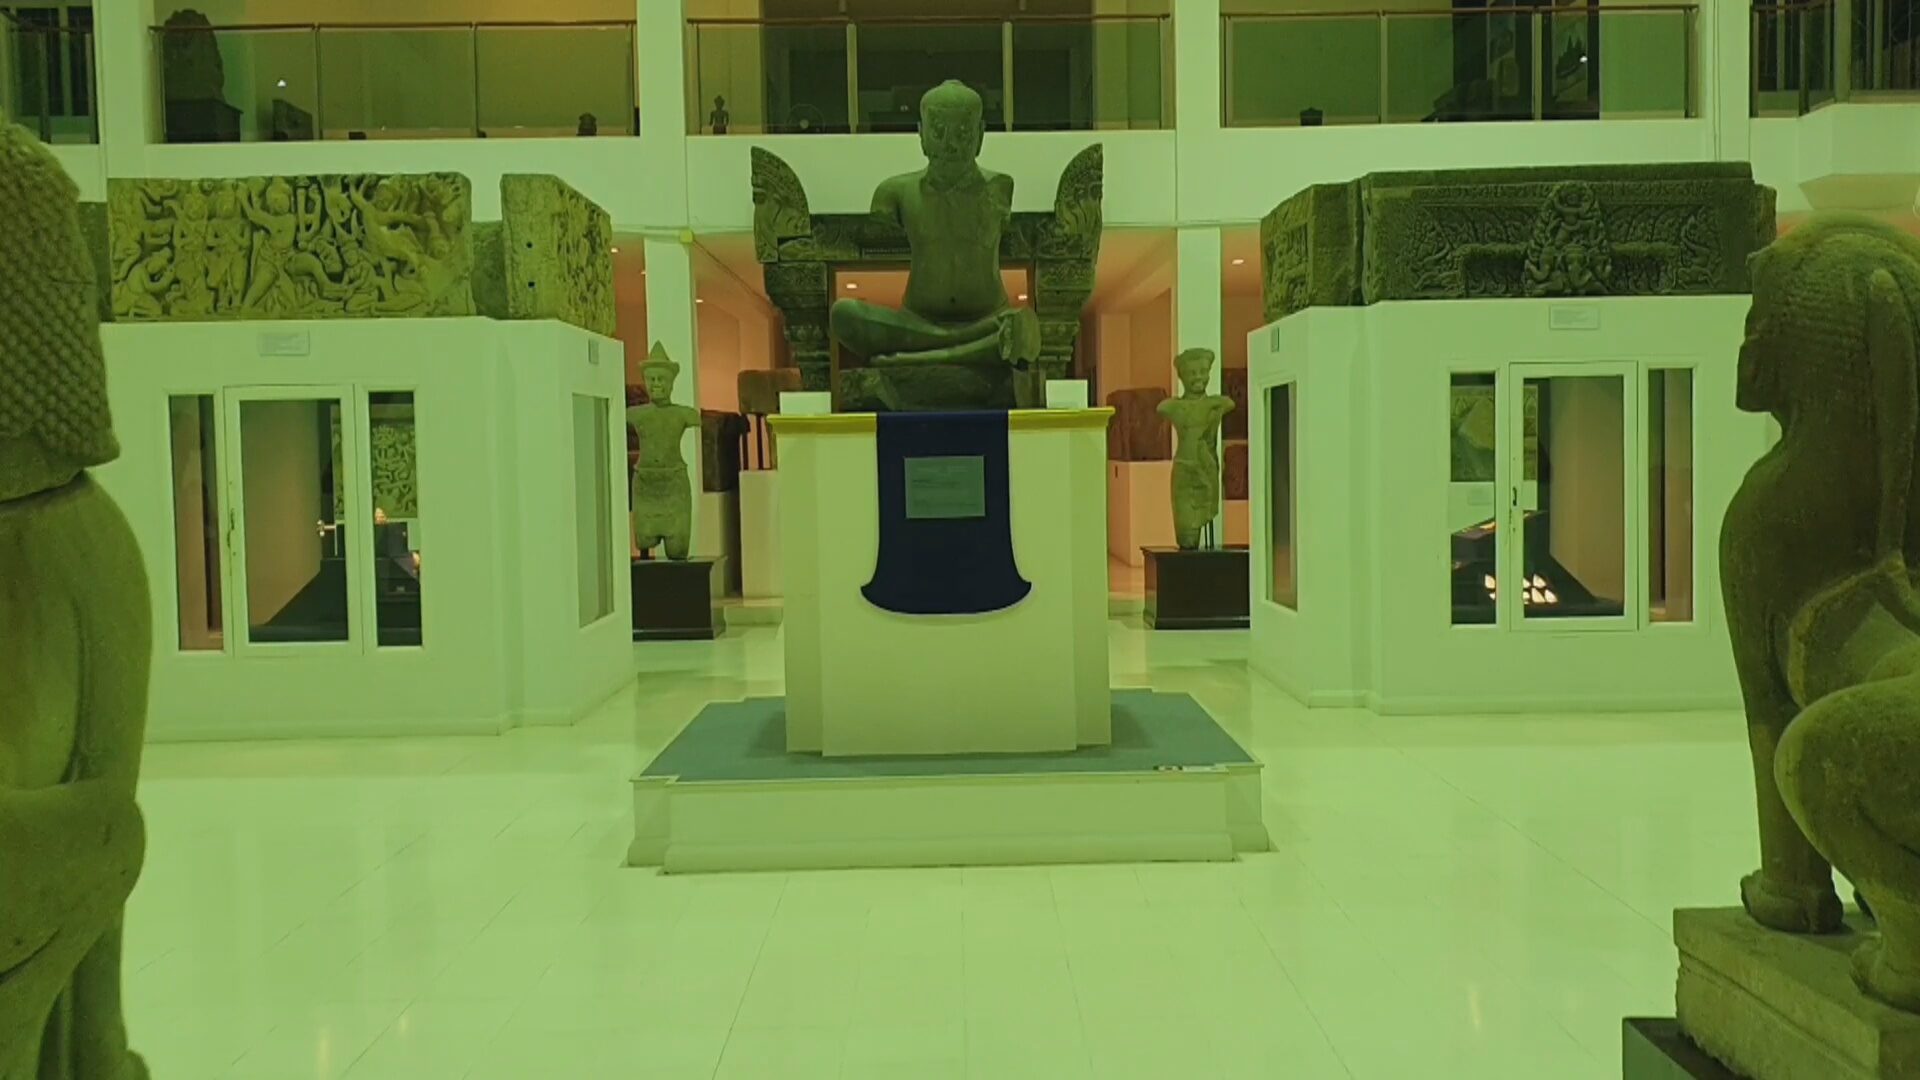 ปีละครั้ง! เปิดพิพิธภัณฑพิมาย ยามค่ำคืน ชมโบราณวัตถุล้ำค่าของชาติ กระตุ้นท่องเที่ยว